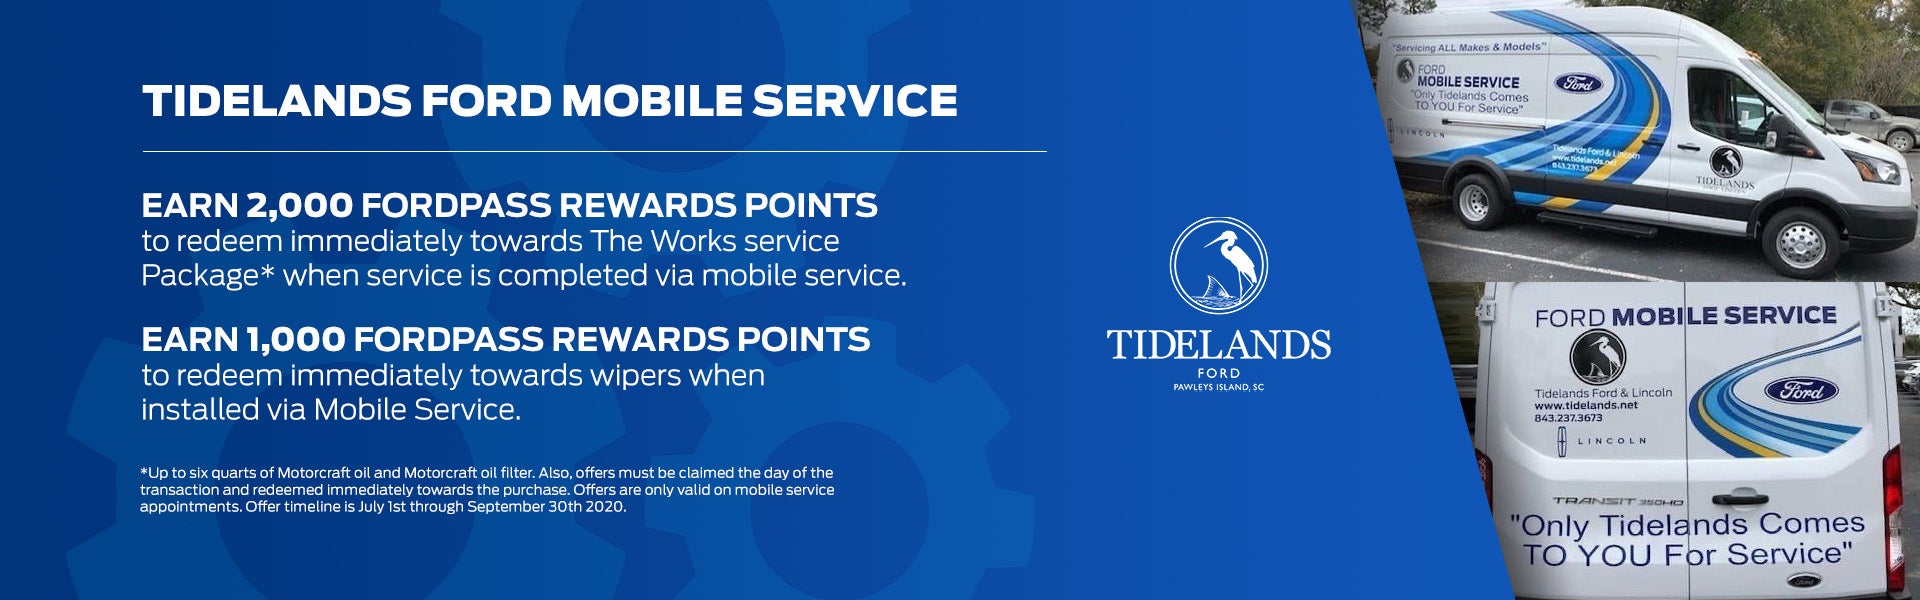 Tidelands Ford Mobile Service